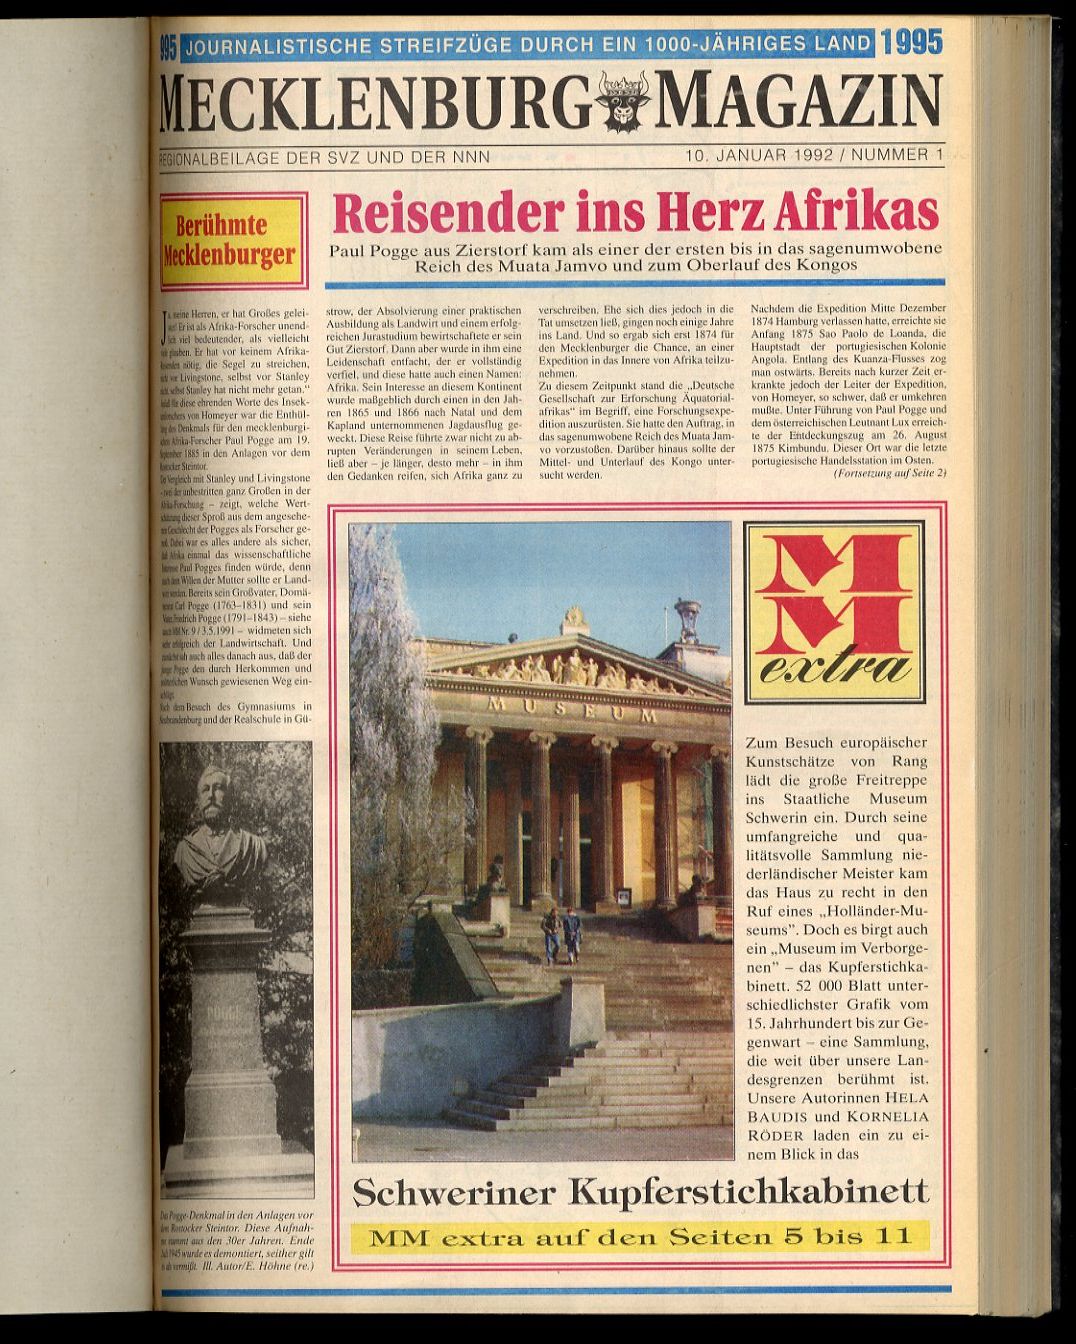   Mecklenburg-Magazin. Beilage der Schweriner Volkszeitung und der Norddeutschen Neuesten Nachrichten. Band 3. 